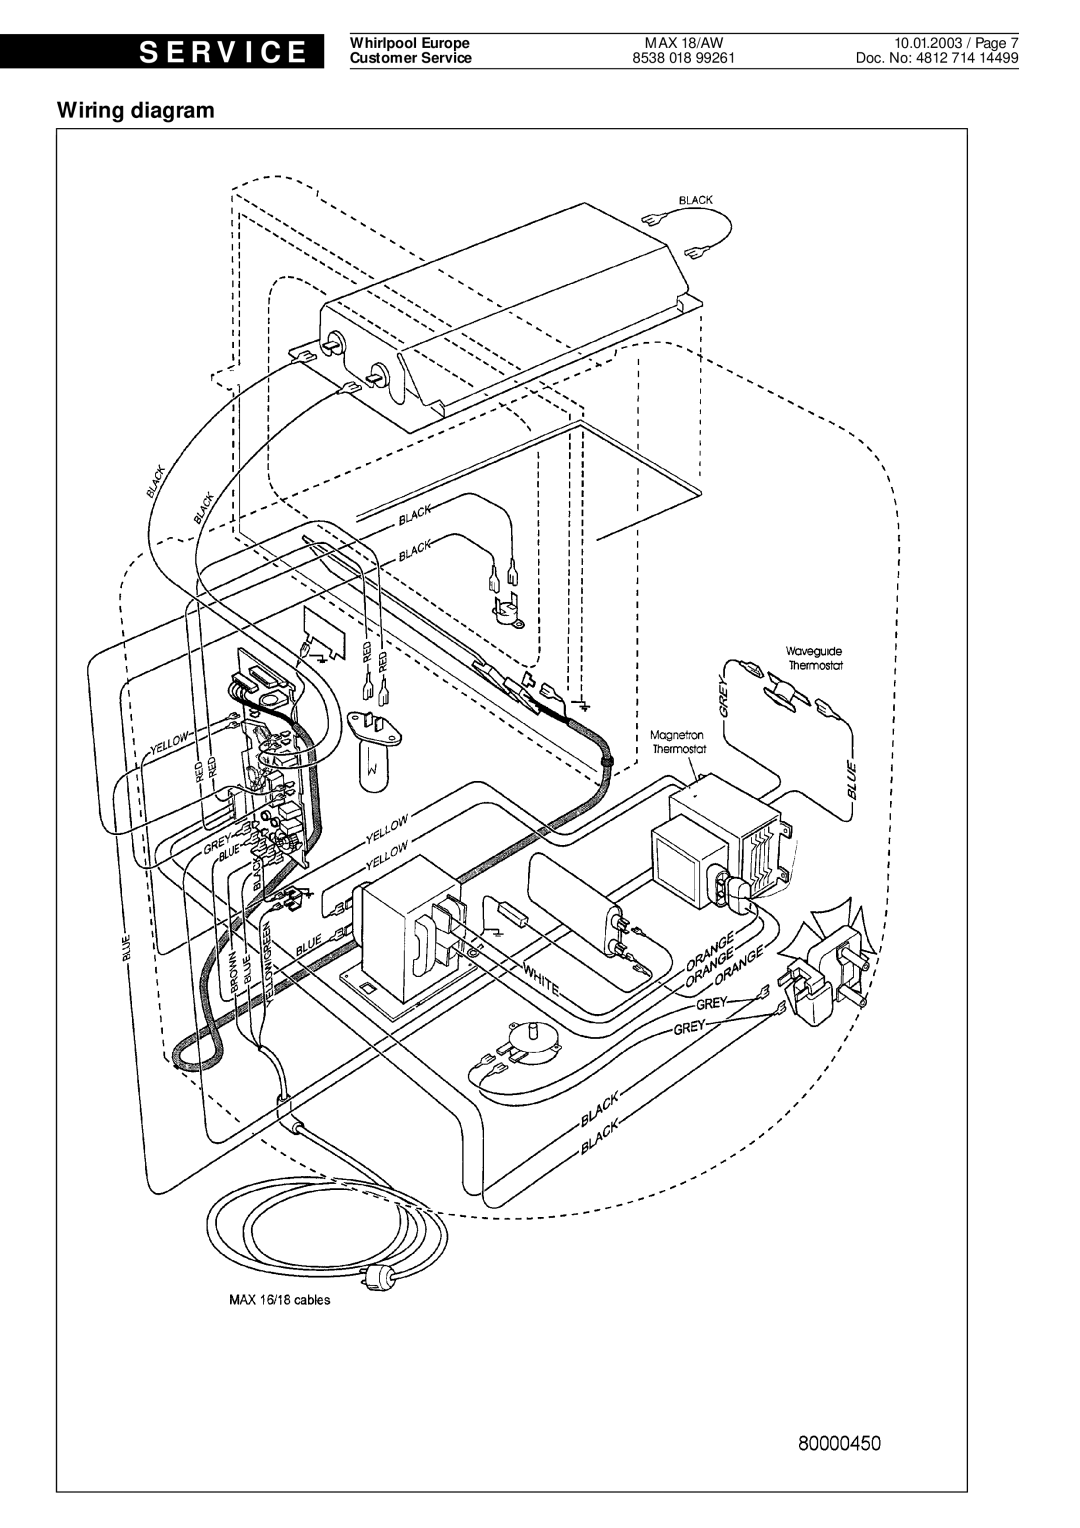 Whirlpool MAX 18 AW, max, aw service manual S E R V I C E, Wiring diagram, Doc. No 